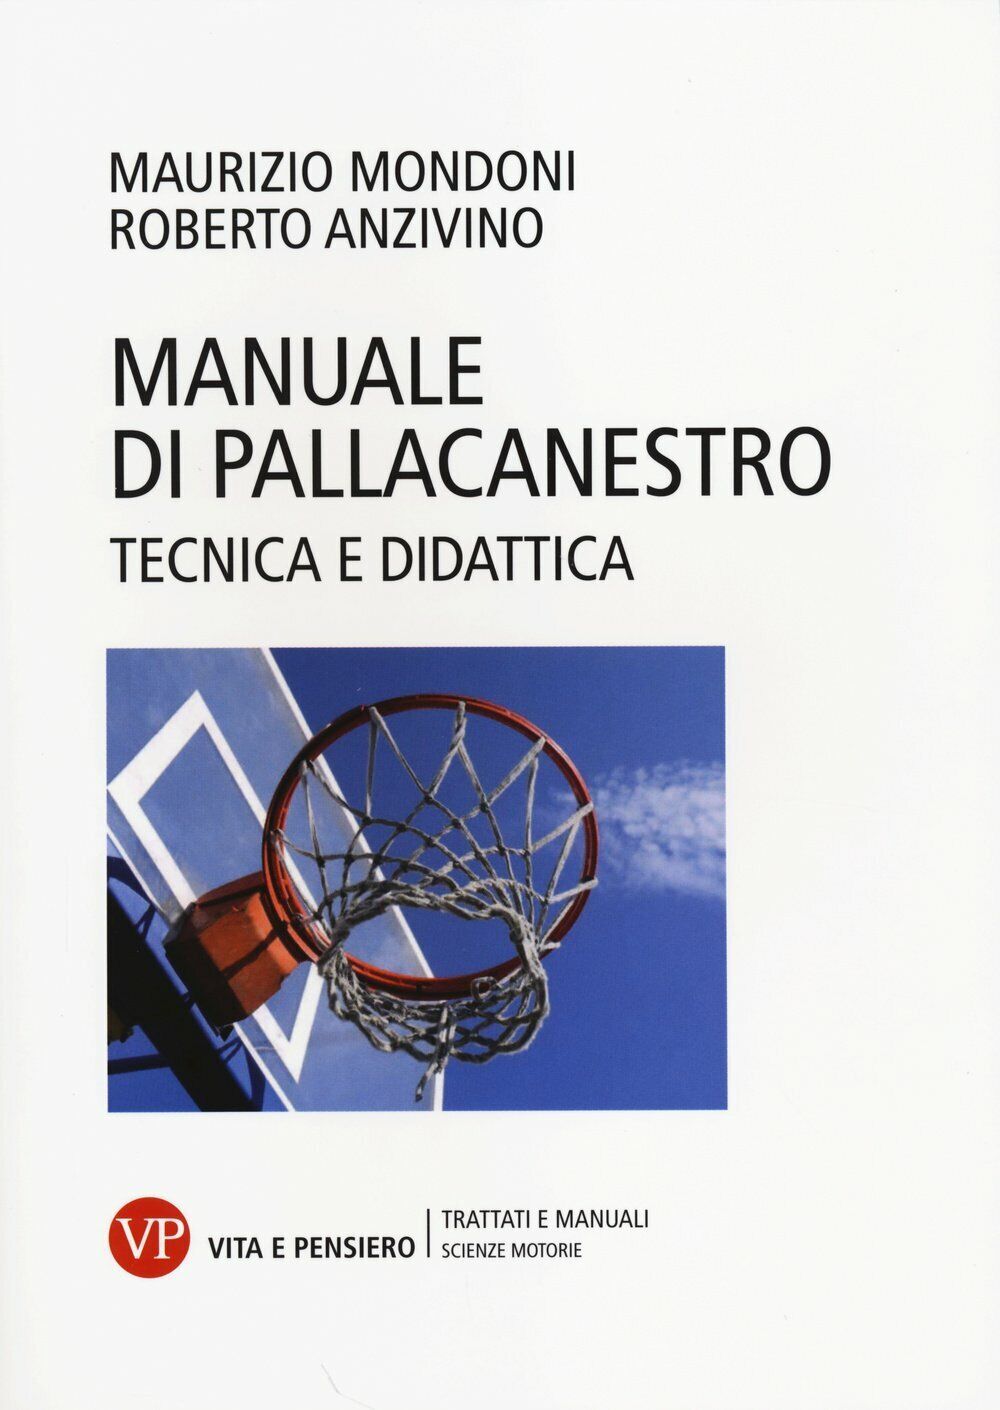 Manuale di pallacanestro - Maurizio Mondoni, Roberto Anzivino - 2004 libro usato